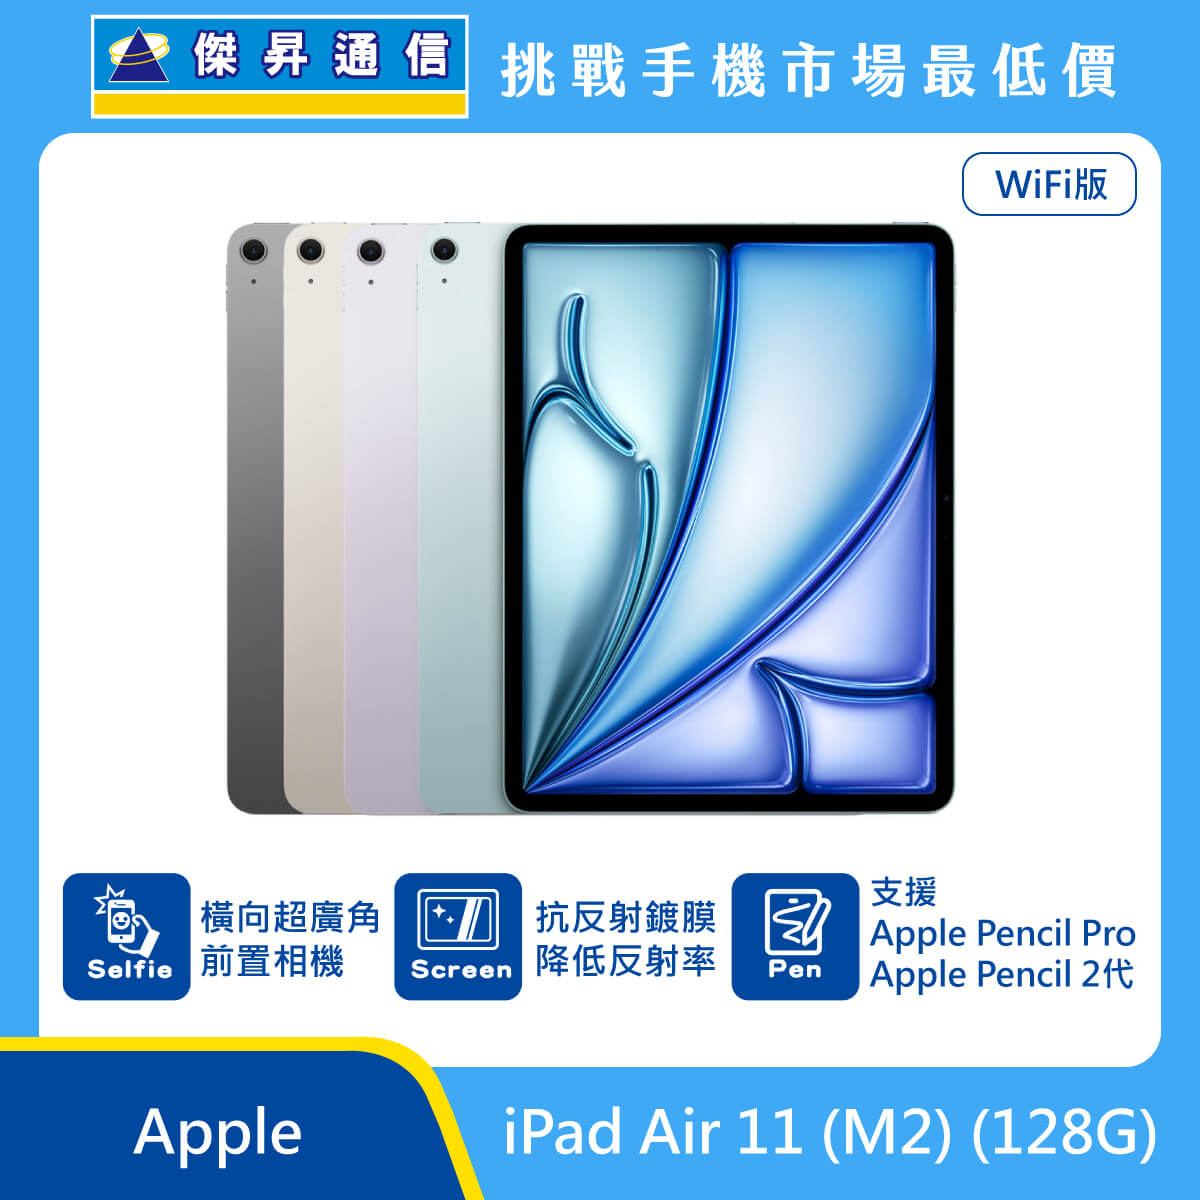 Apple 平板 iPad Air 11 M2 (128G) 即將上市